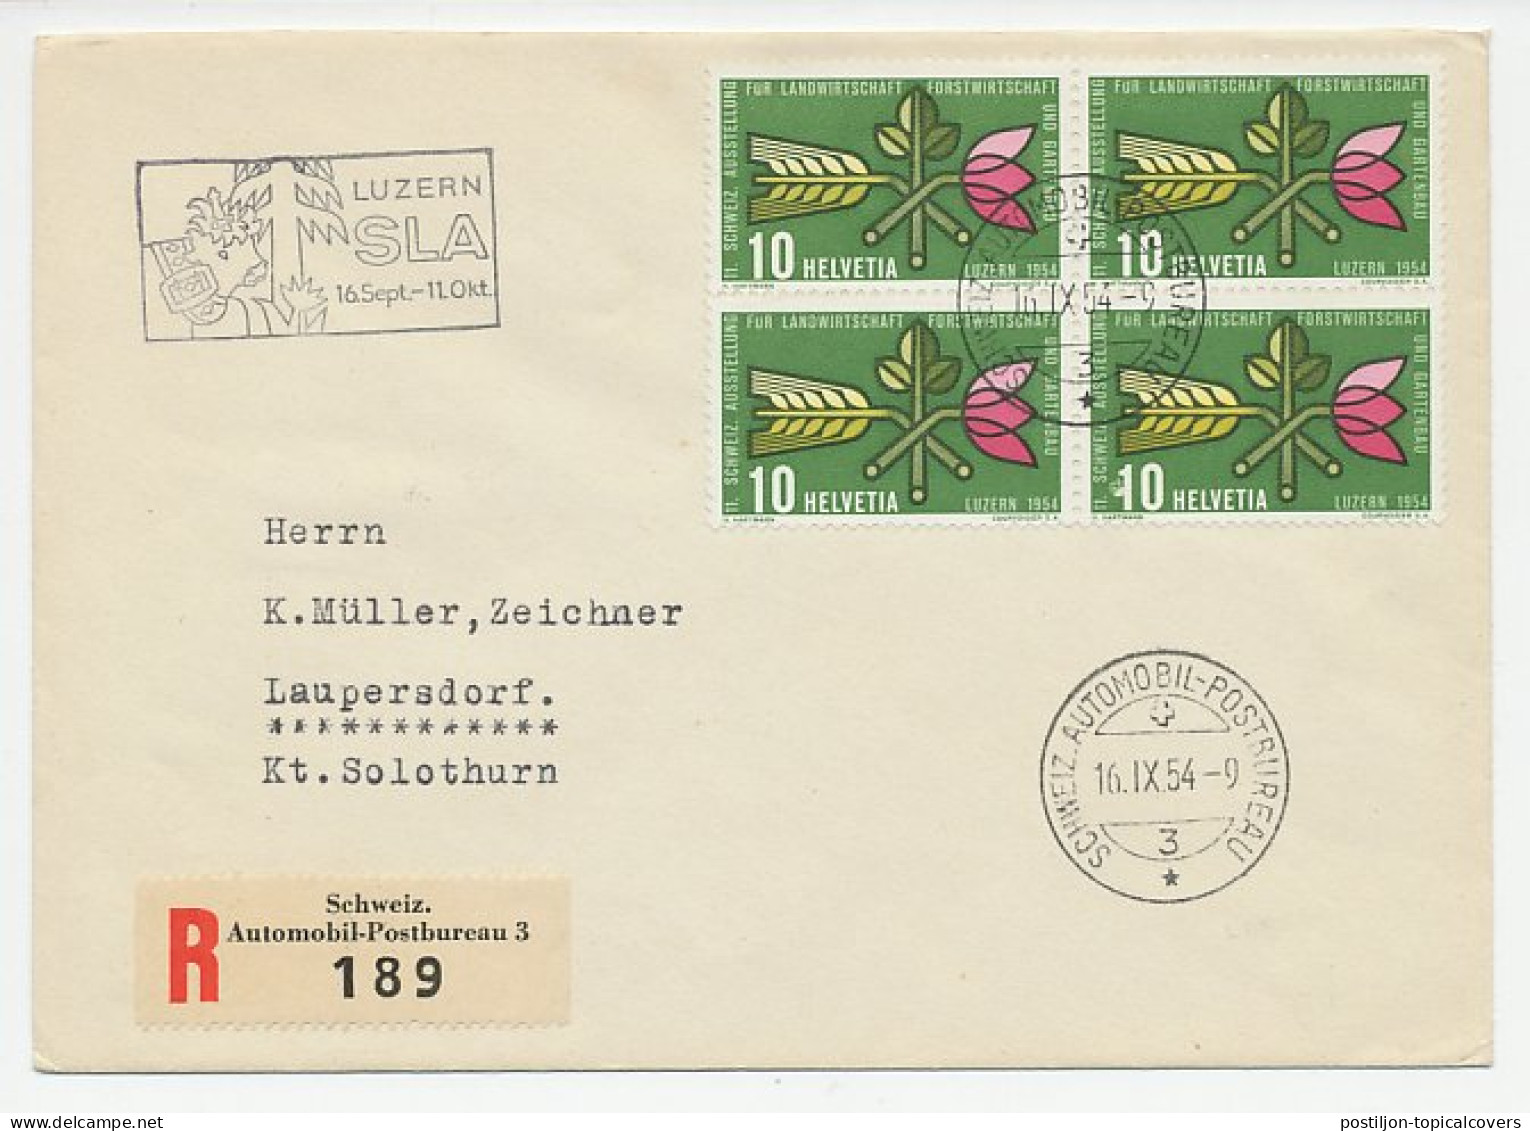 Registered Cover / Postmark Switzerland 1954 Agricultural Exhibition - Landwirtschaft